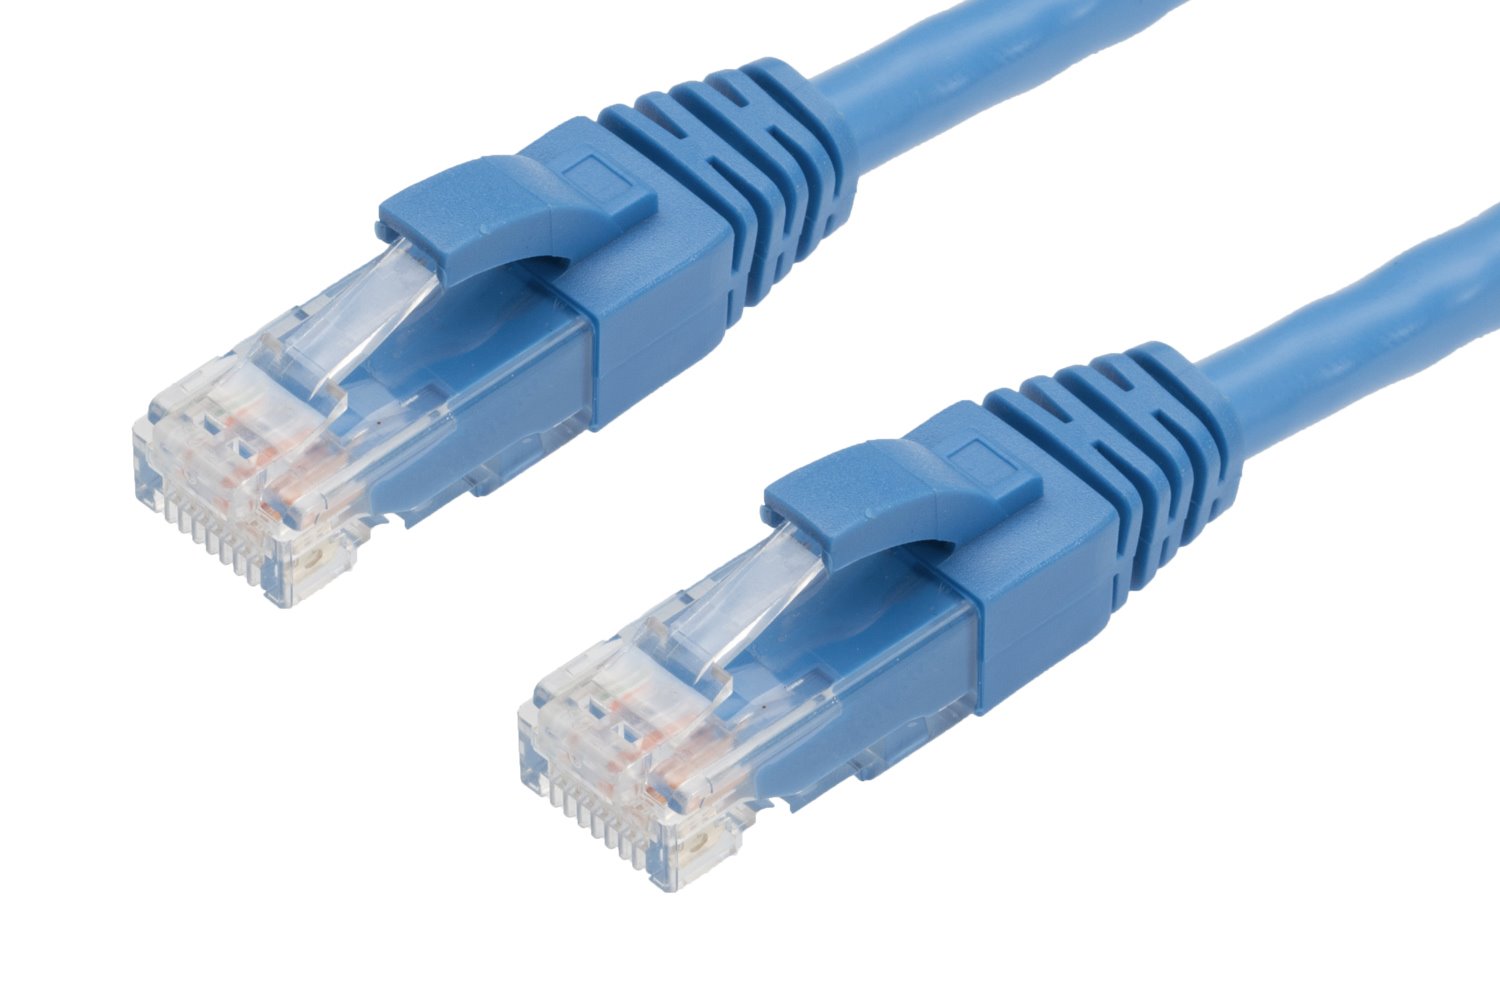 4Cabling 3M RJ45 Cat6 Ethernet Cable. Blue